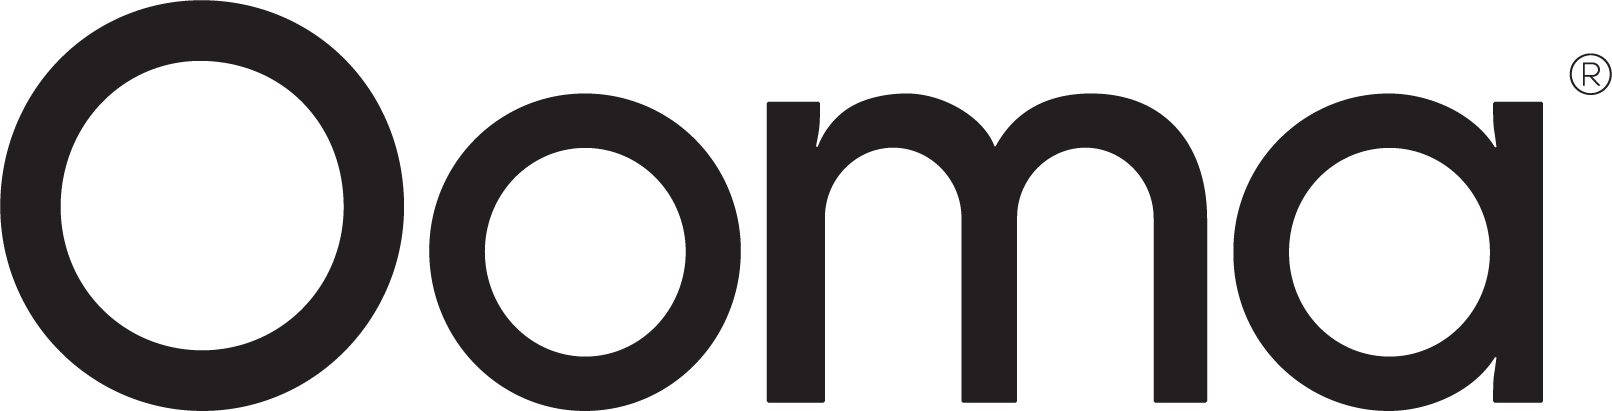 ooma big logo